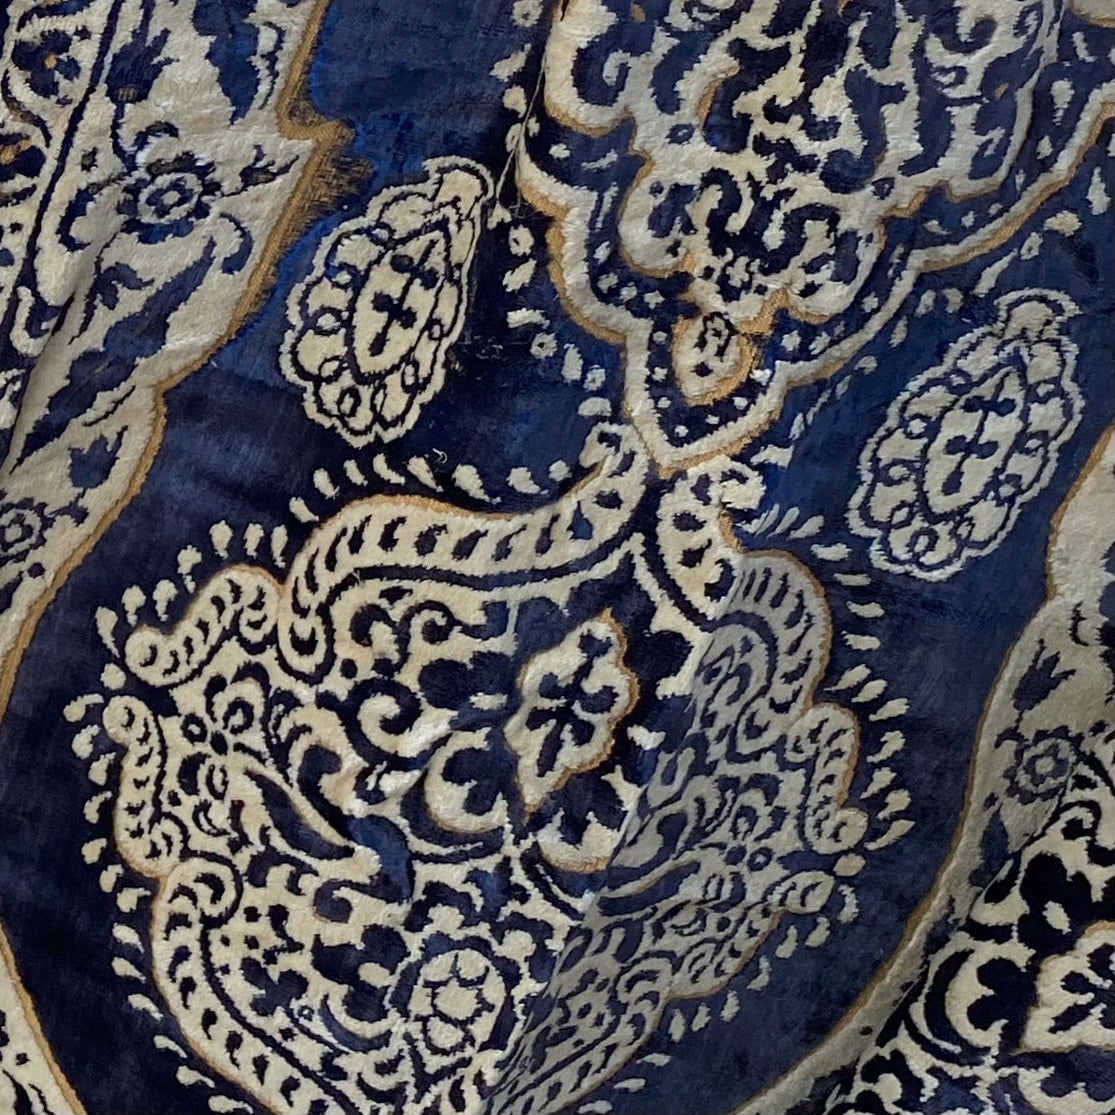 SAHARA Carpet Bag (blue & cream)